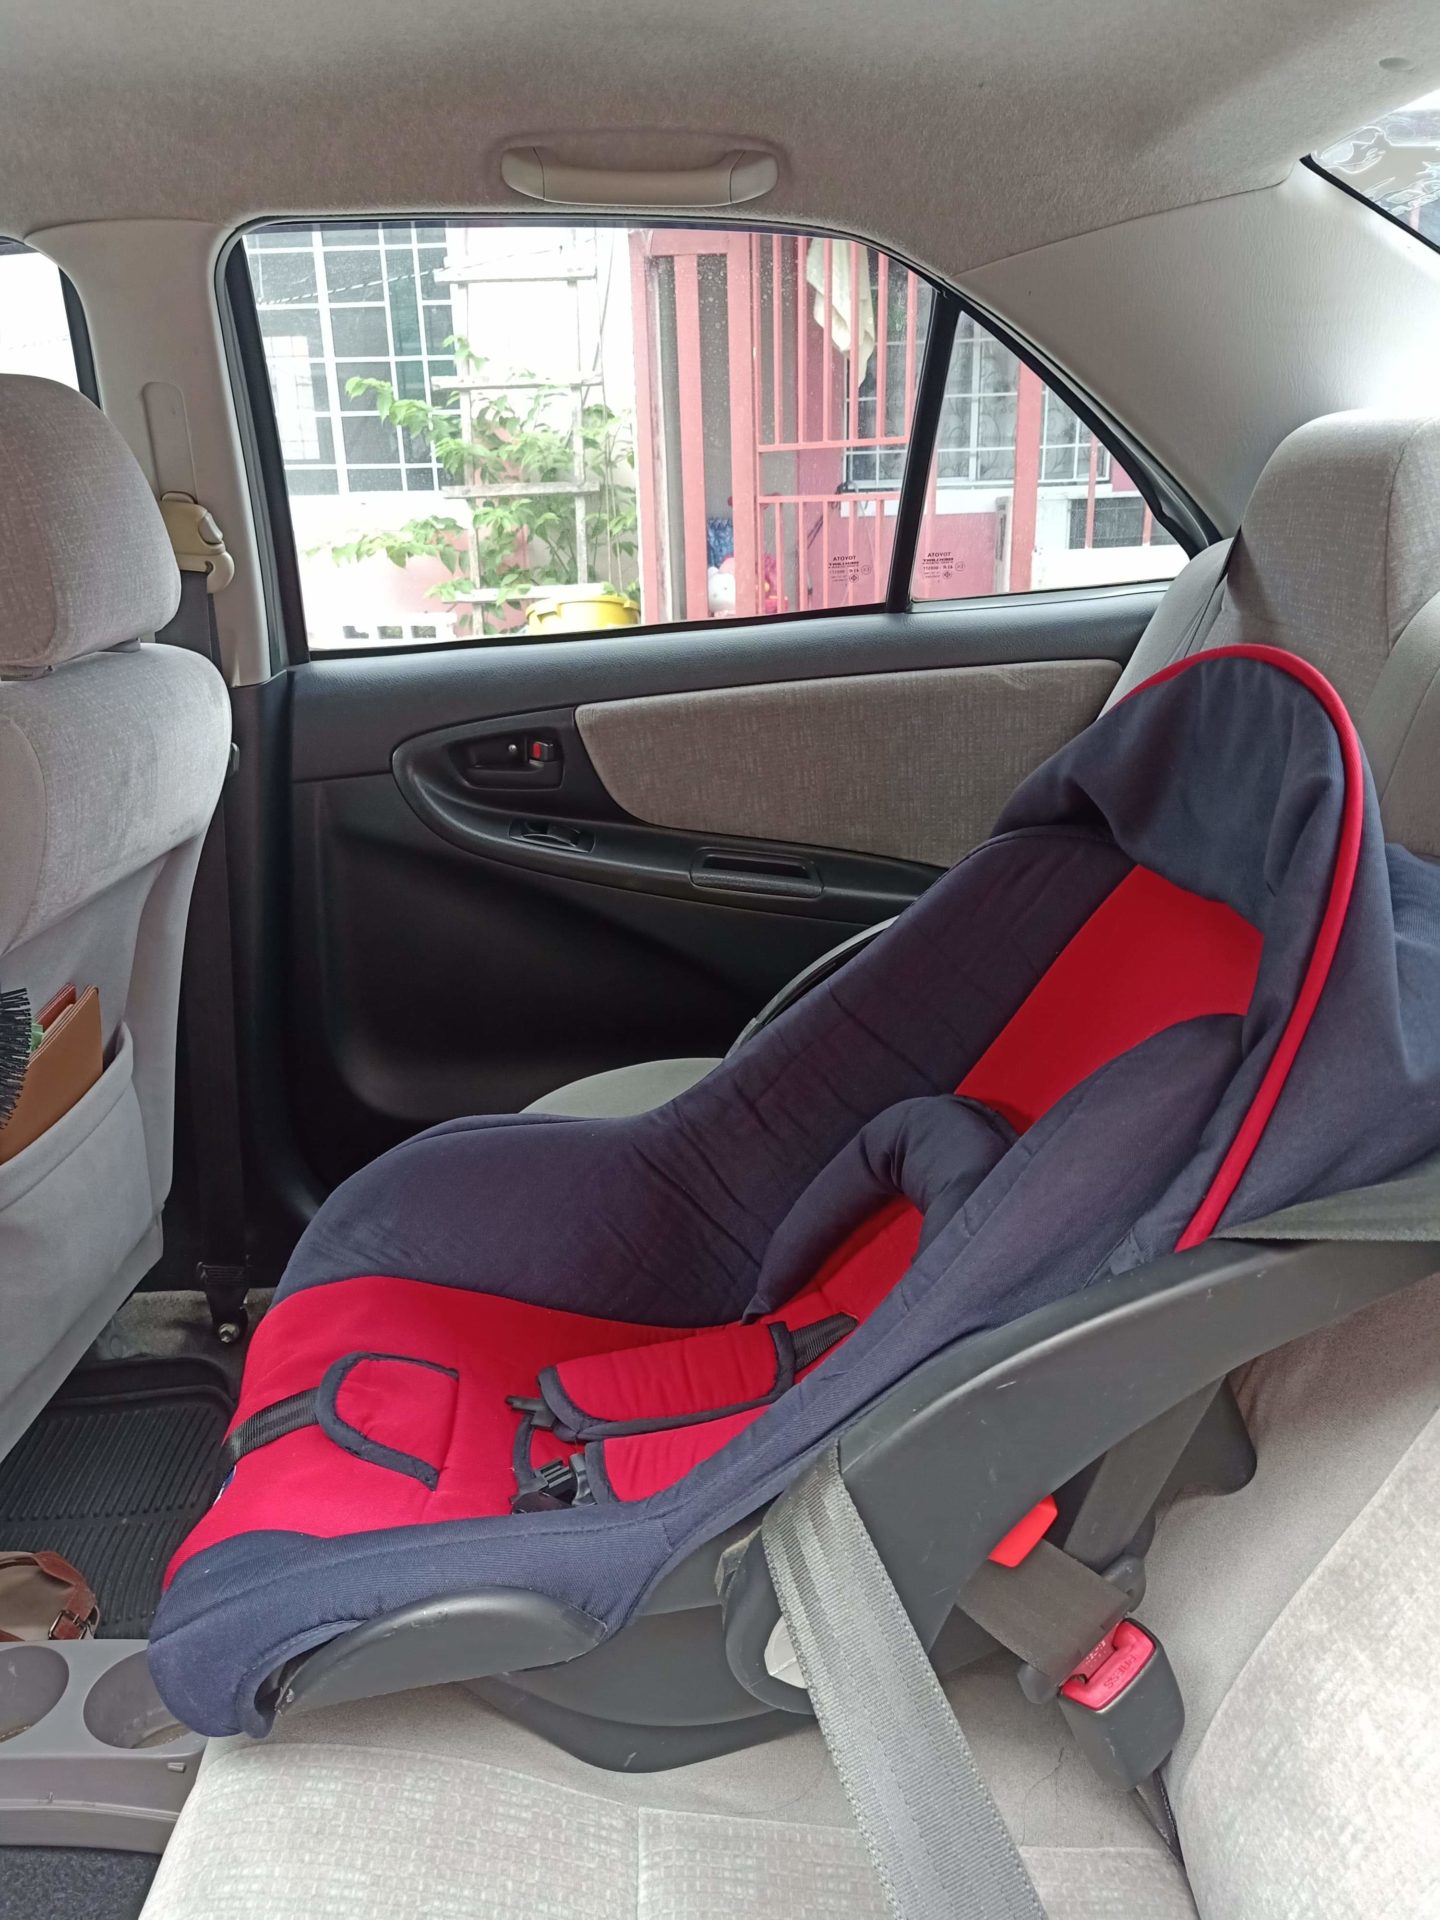 Denessa Aguilar-Evangelista's child car seat for her nine-month-old son. Photo by Denessa Aguilar-Evangelista.